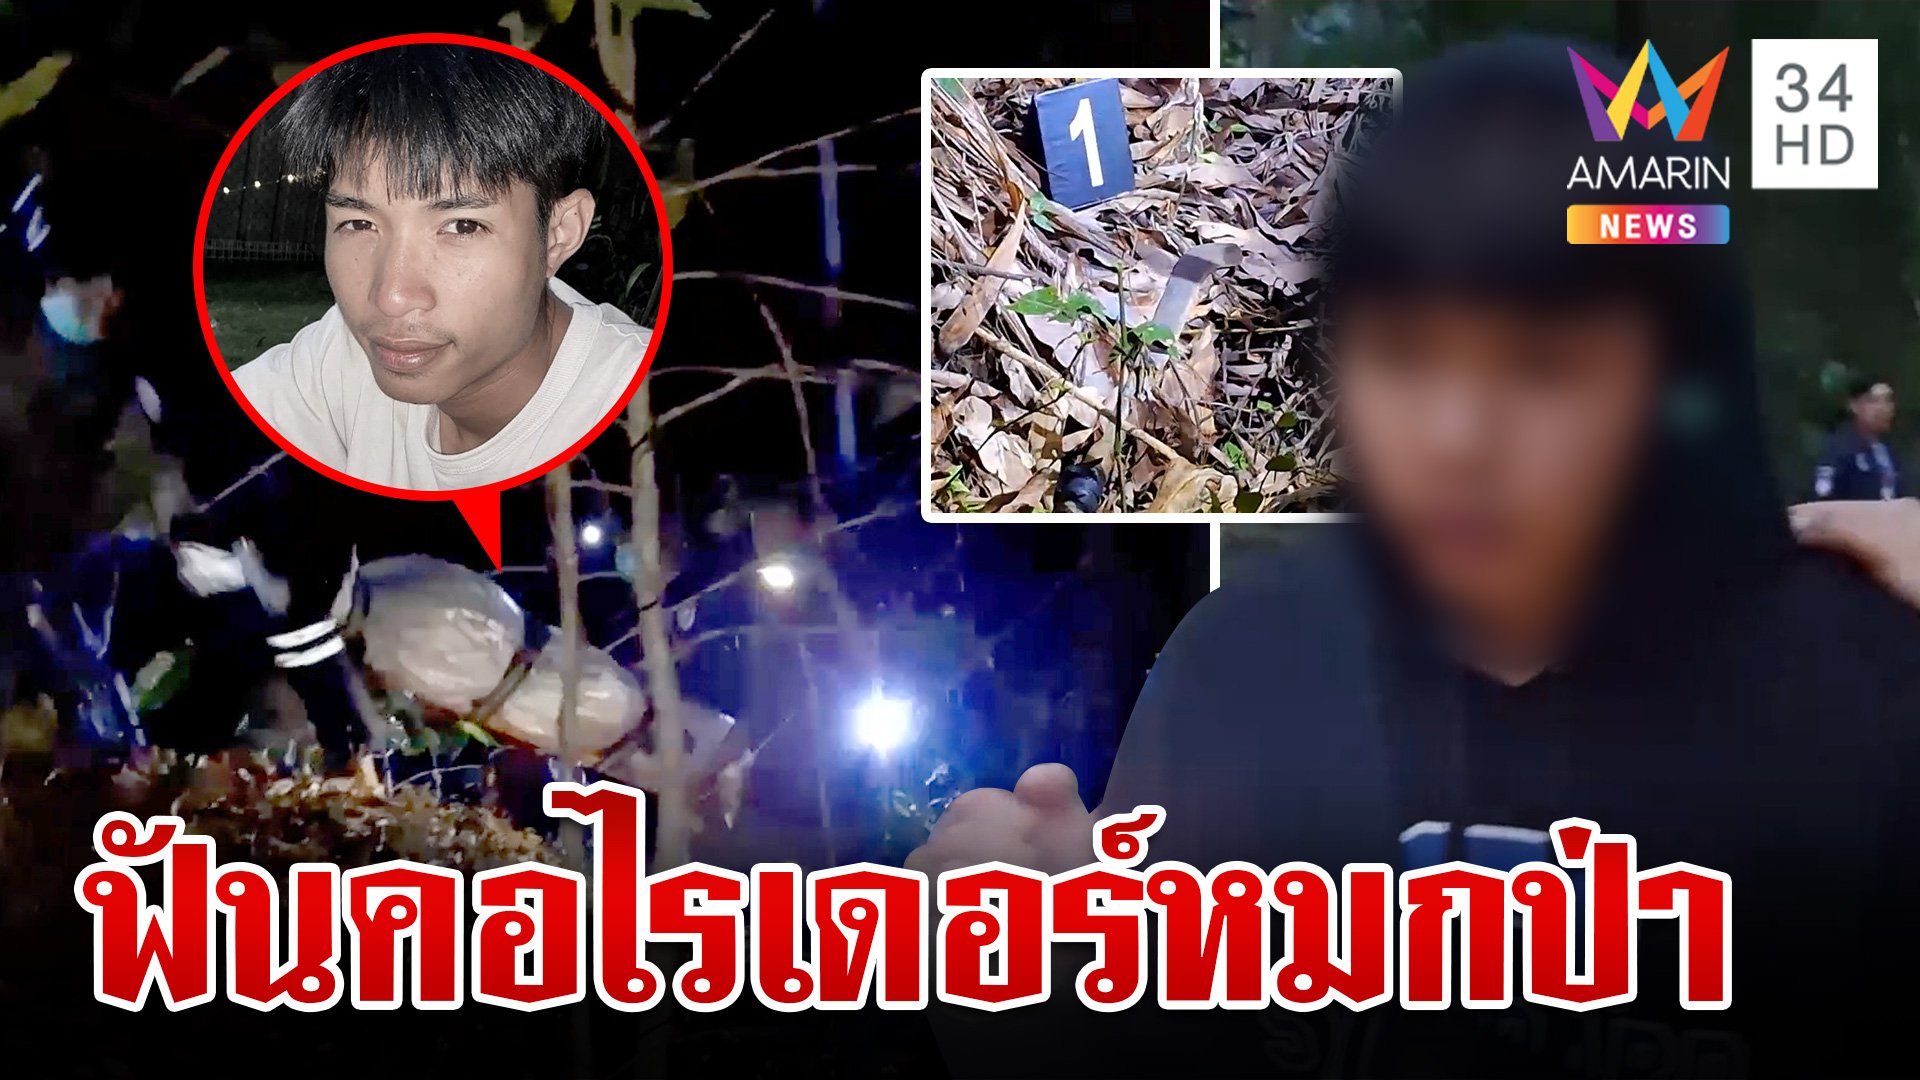 หนุ่ม 17 รับฆ่าไรเดอร์หมกป่า สารภาพเป็นเรื่องชู้สาว ตร.ไม่ปักใจเชื่อ | ทุบโต๊ะข่าว | 21 พ.ค. 67 | AMARIN TVHD34